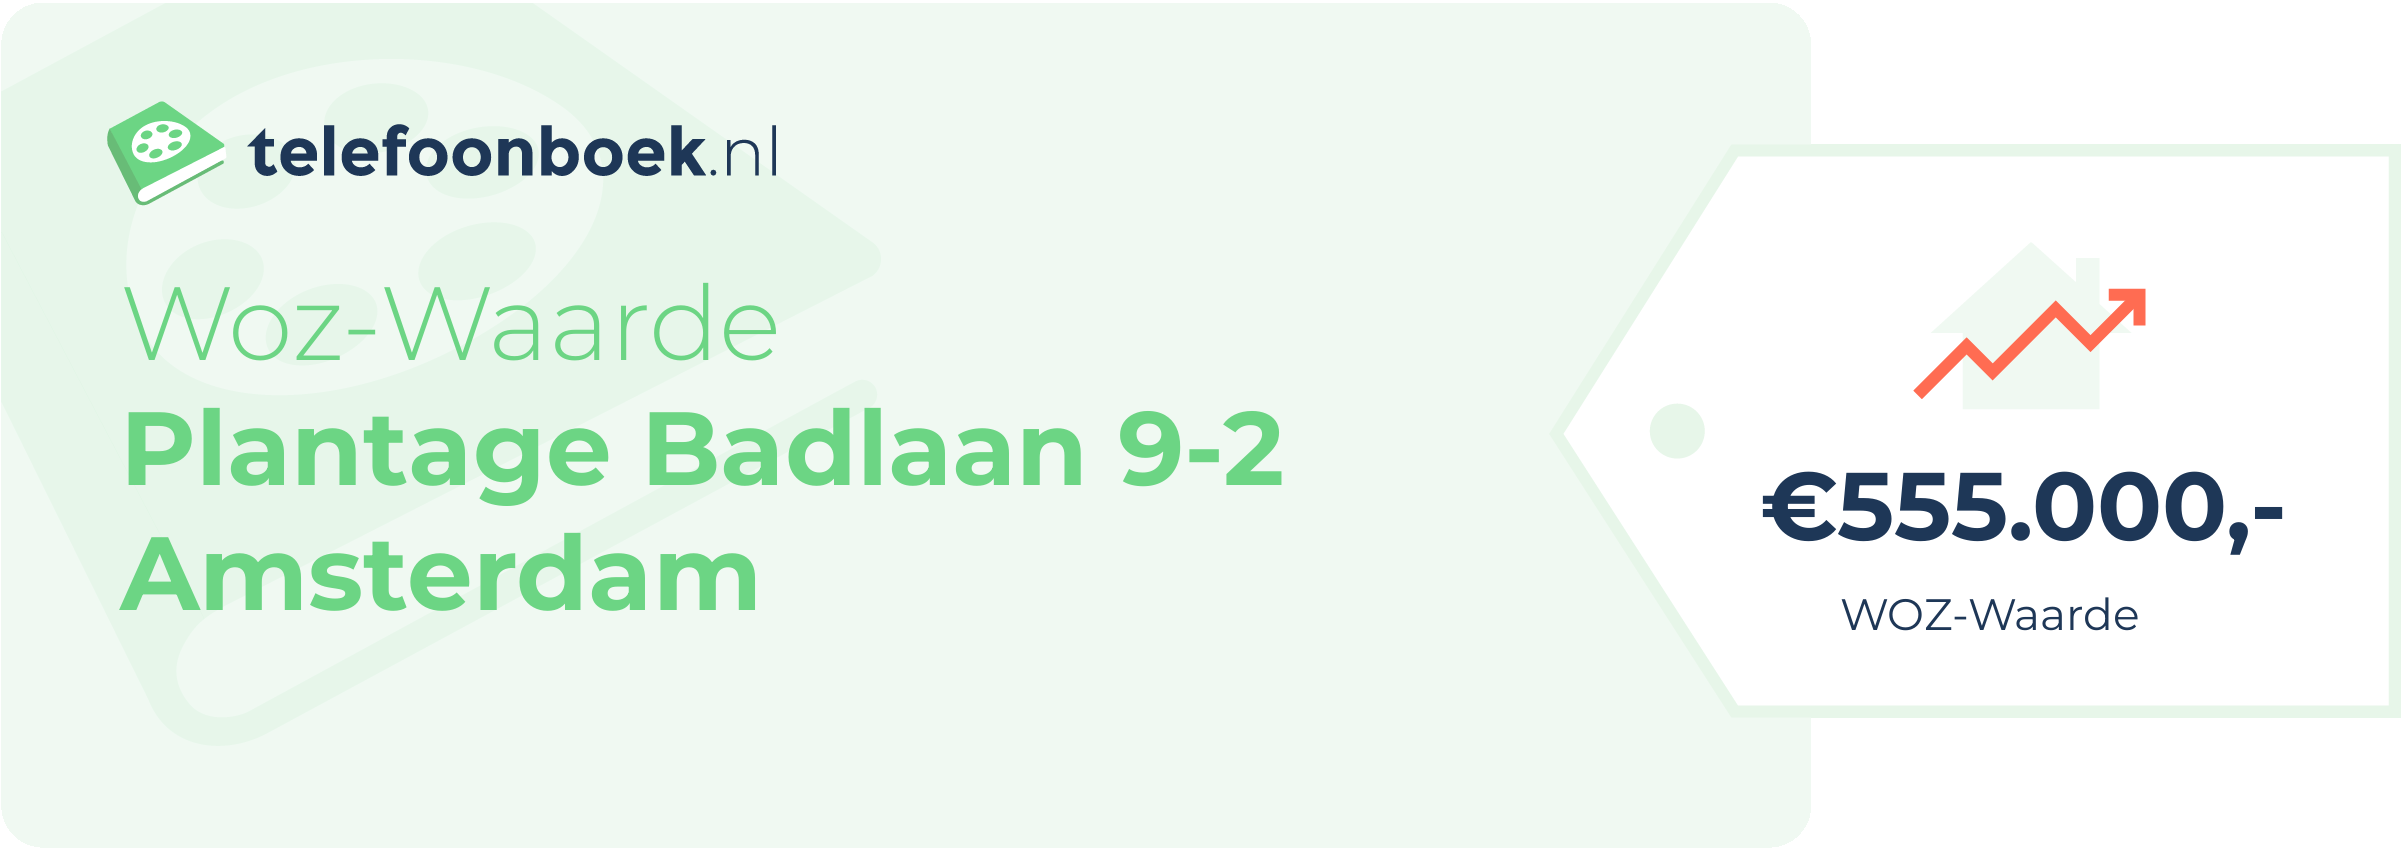 WOZ-waarde Plantage Badlaan 9-2 Amsterdam